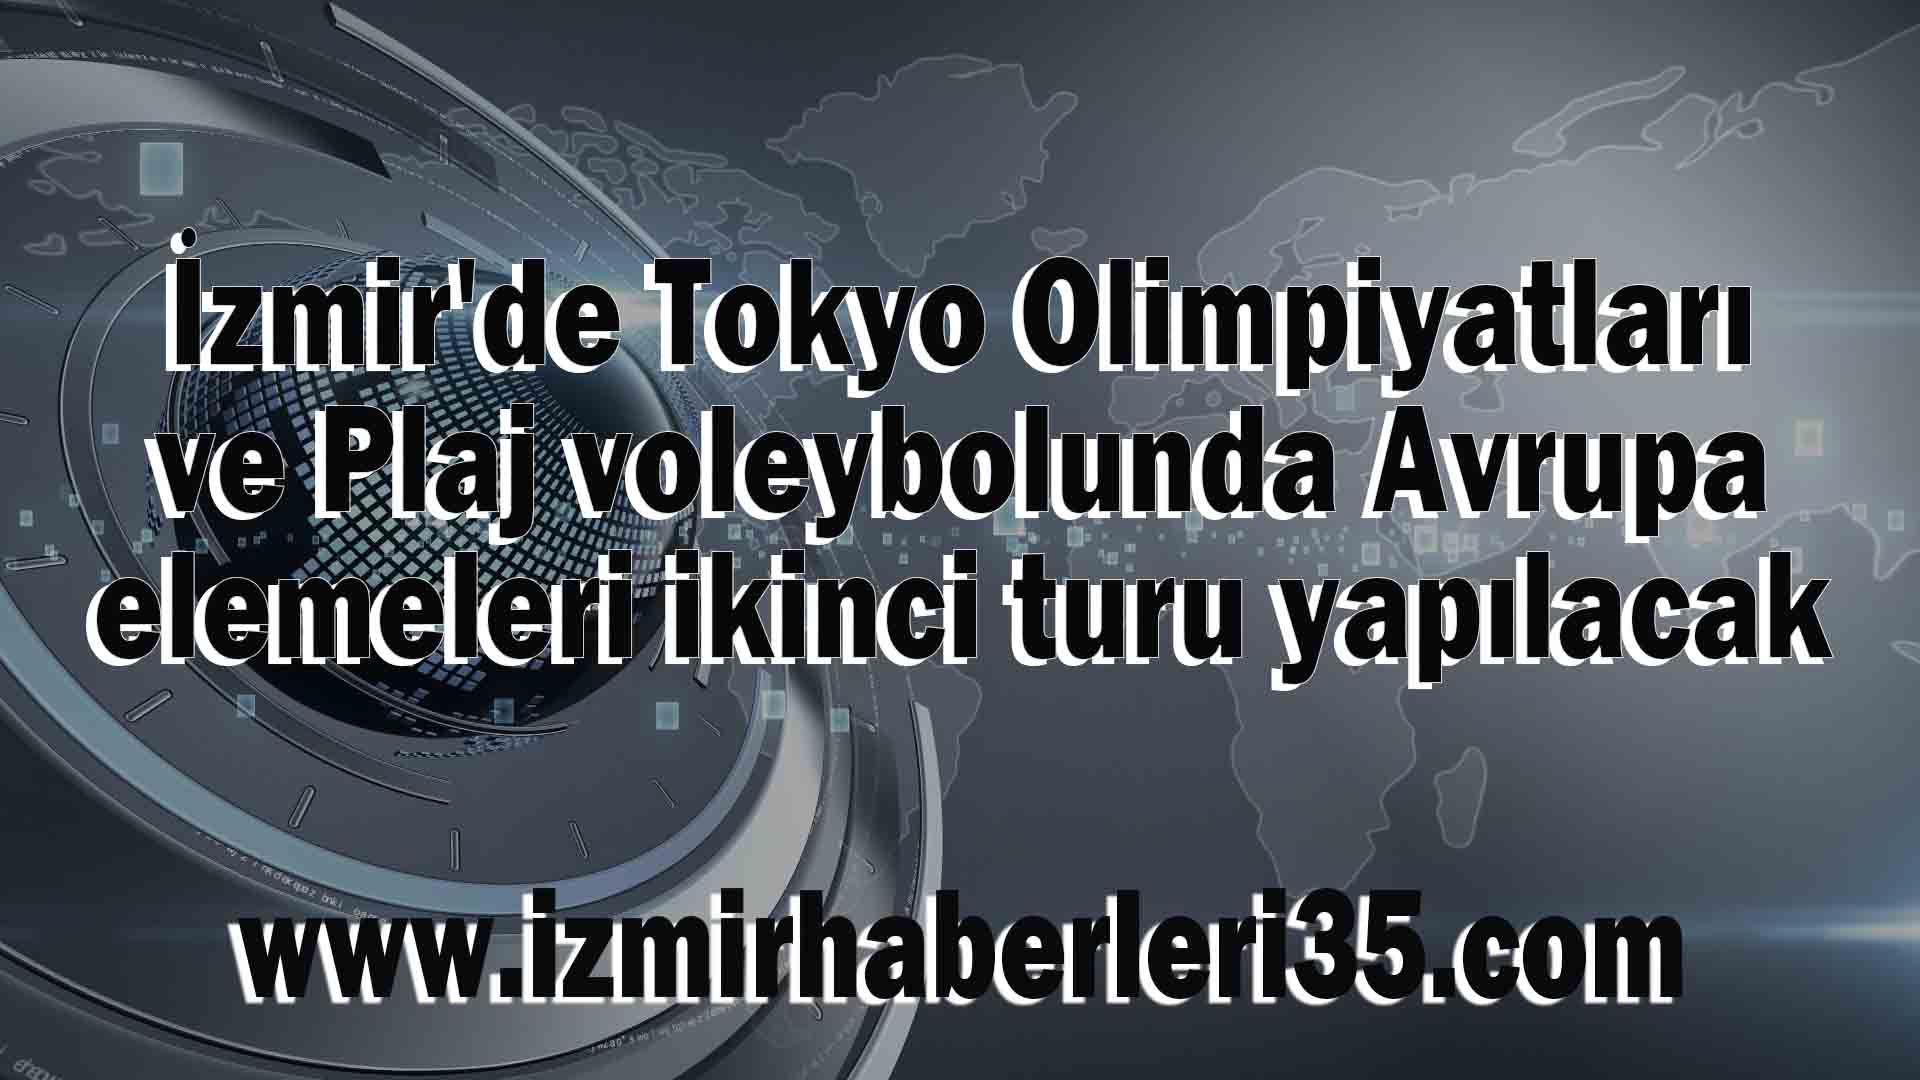 İzmir'de Tokyo Olimpiyatları ve Plaj voleybolunda Avrupa elemeleri ikinci turu yapılacak